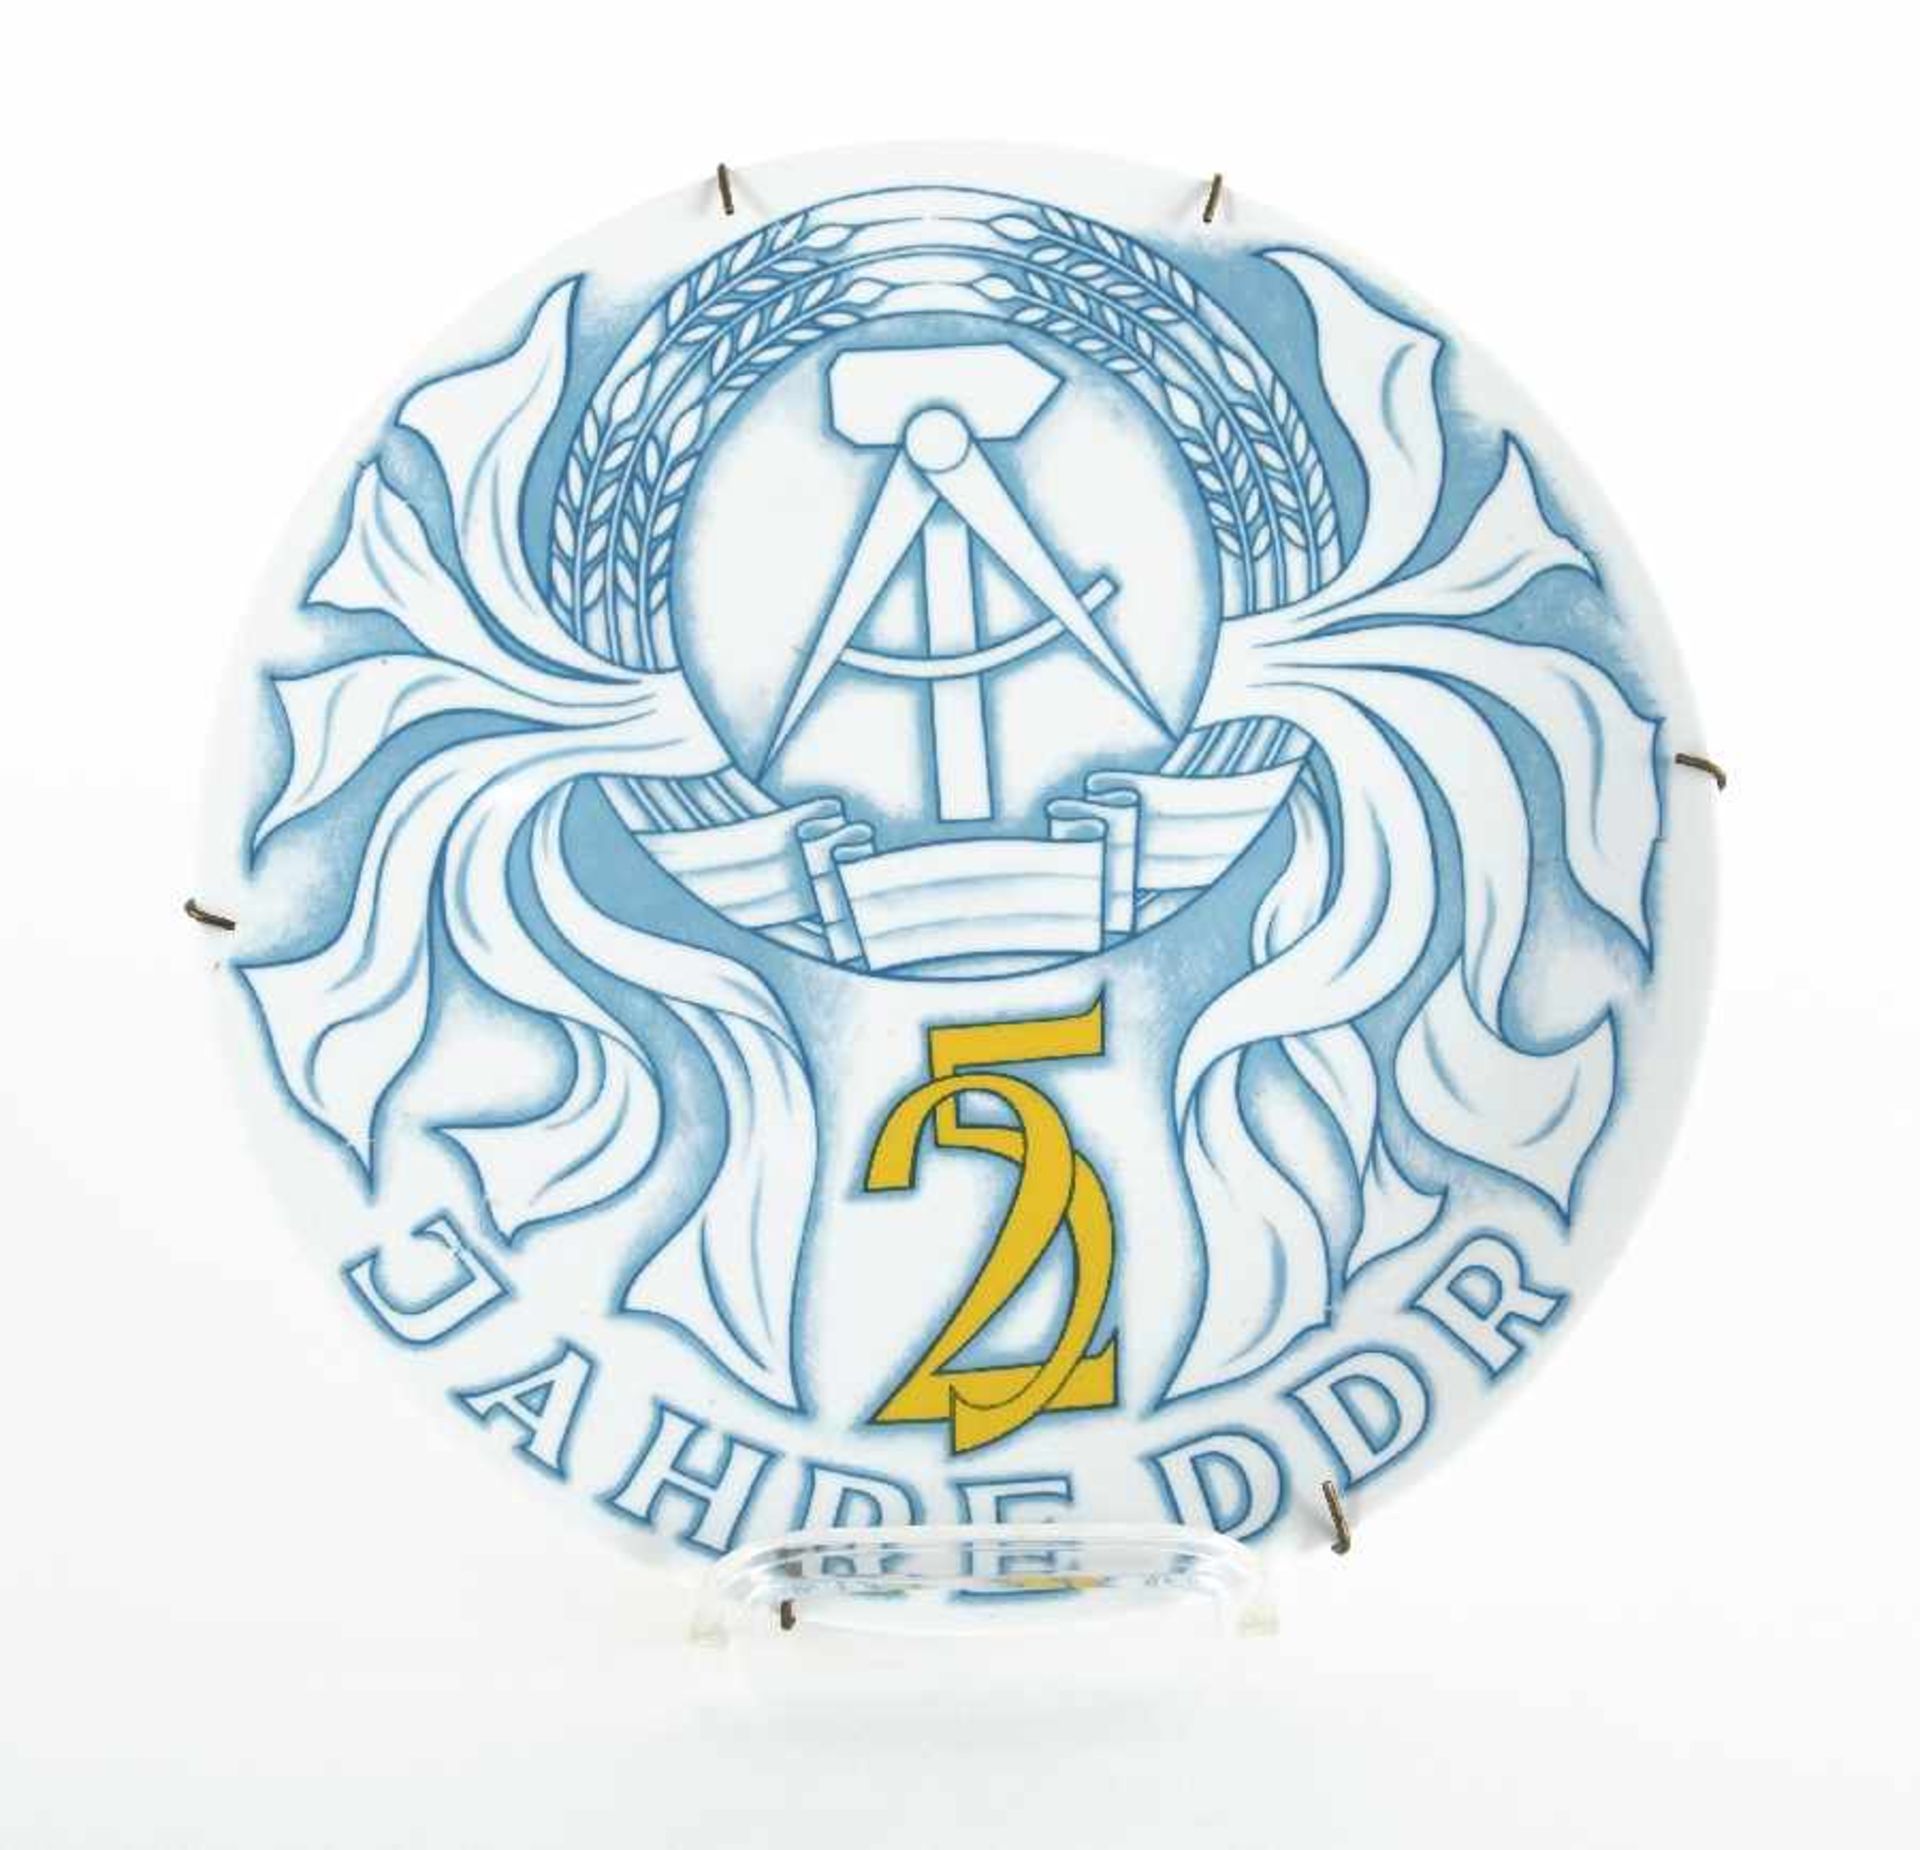 Porcelain manufacture Lichte25 Jahre DDR (Anniversary plate)Porcelain, glazed; Diameter 27.5 cm;